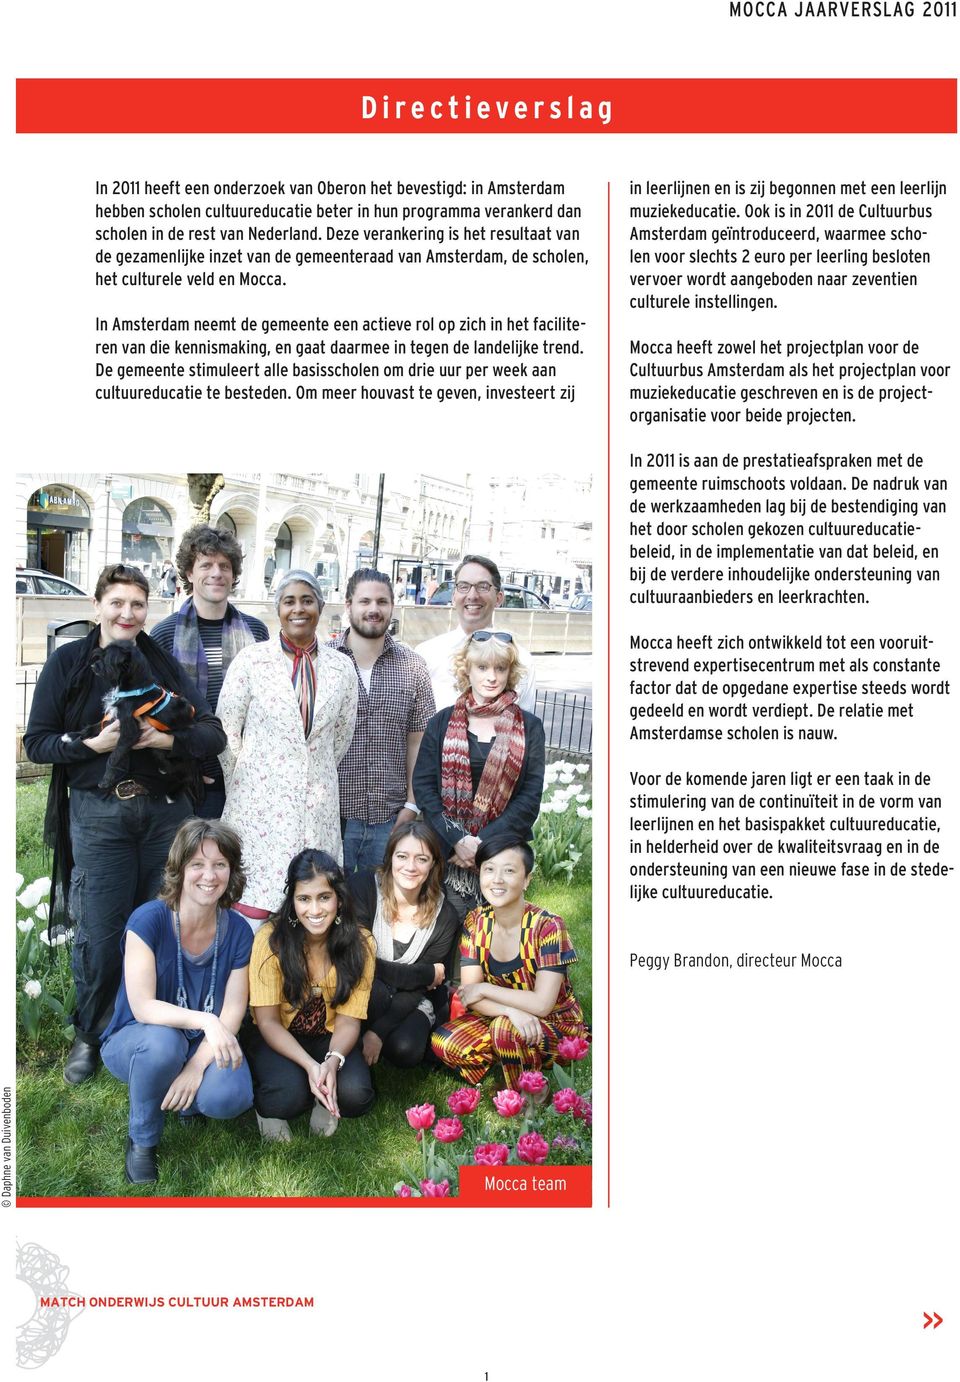 In Amsterdam neemt de gemeente een actieve rol op zich in het faciliteren van die kennismaking, CULTUUREDUCATIE en gaat daarmee in tegen de landelijke trend.